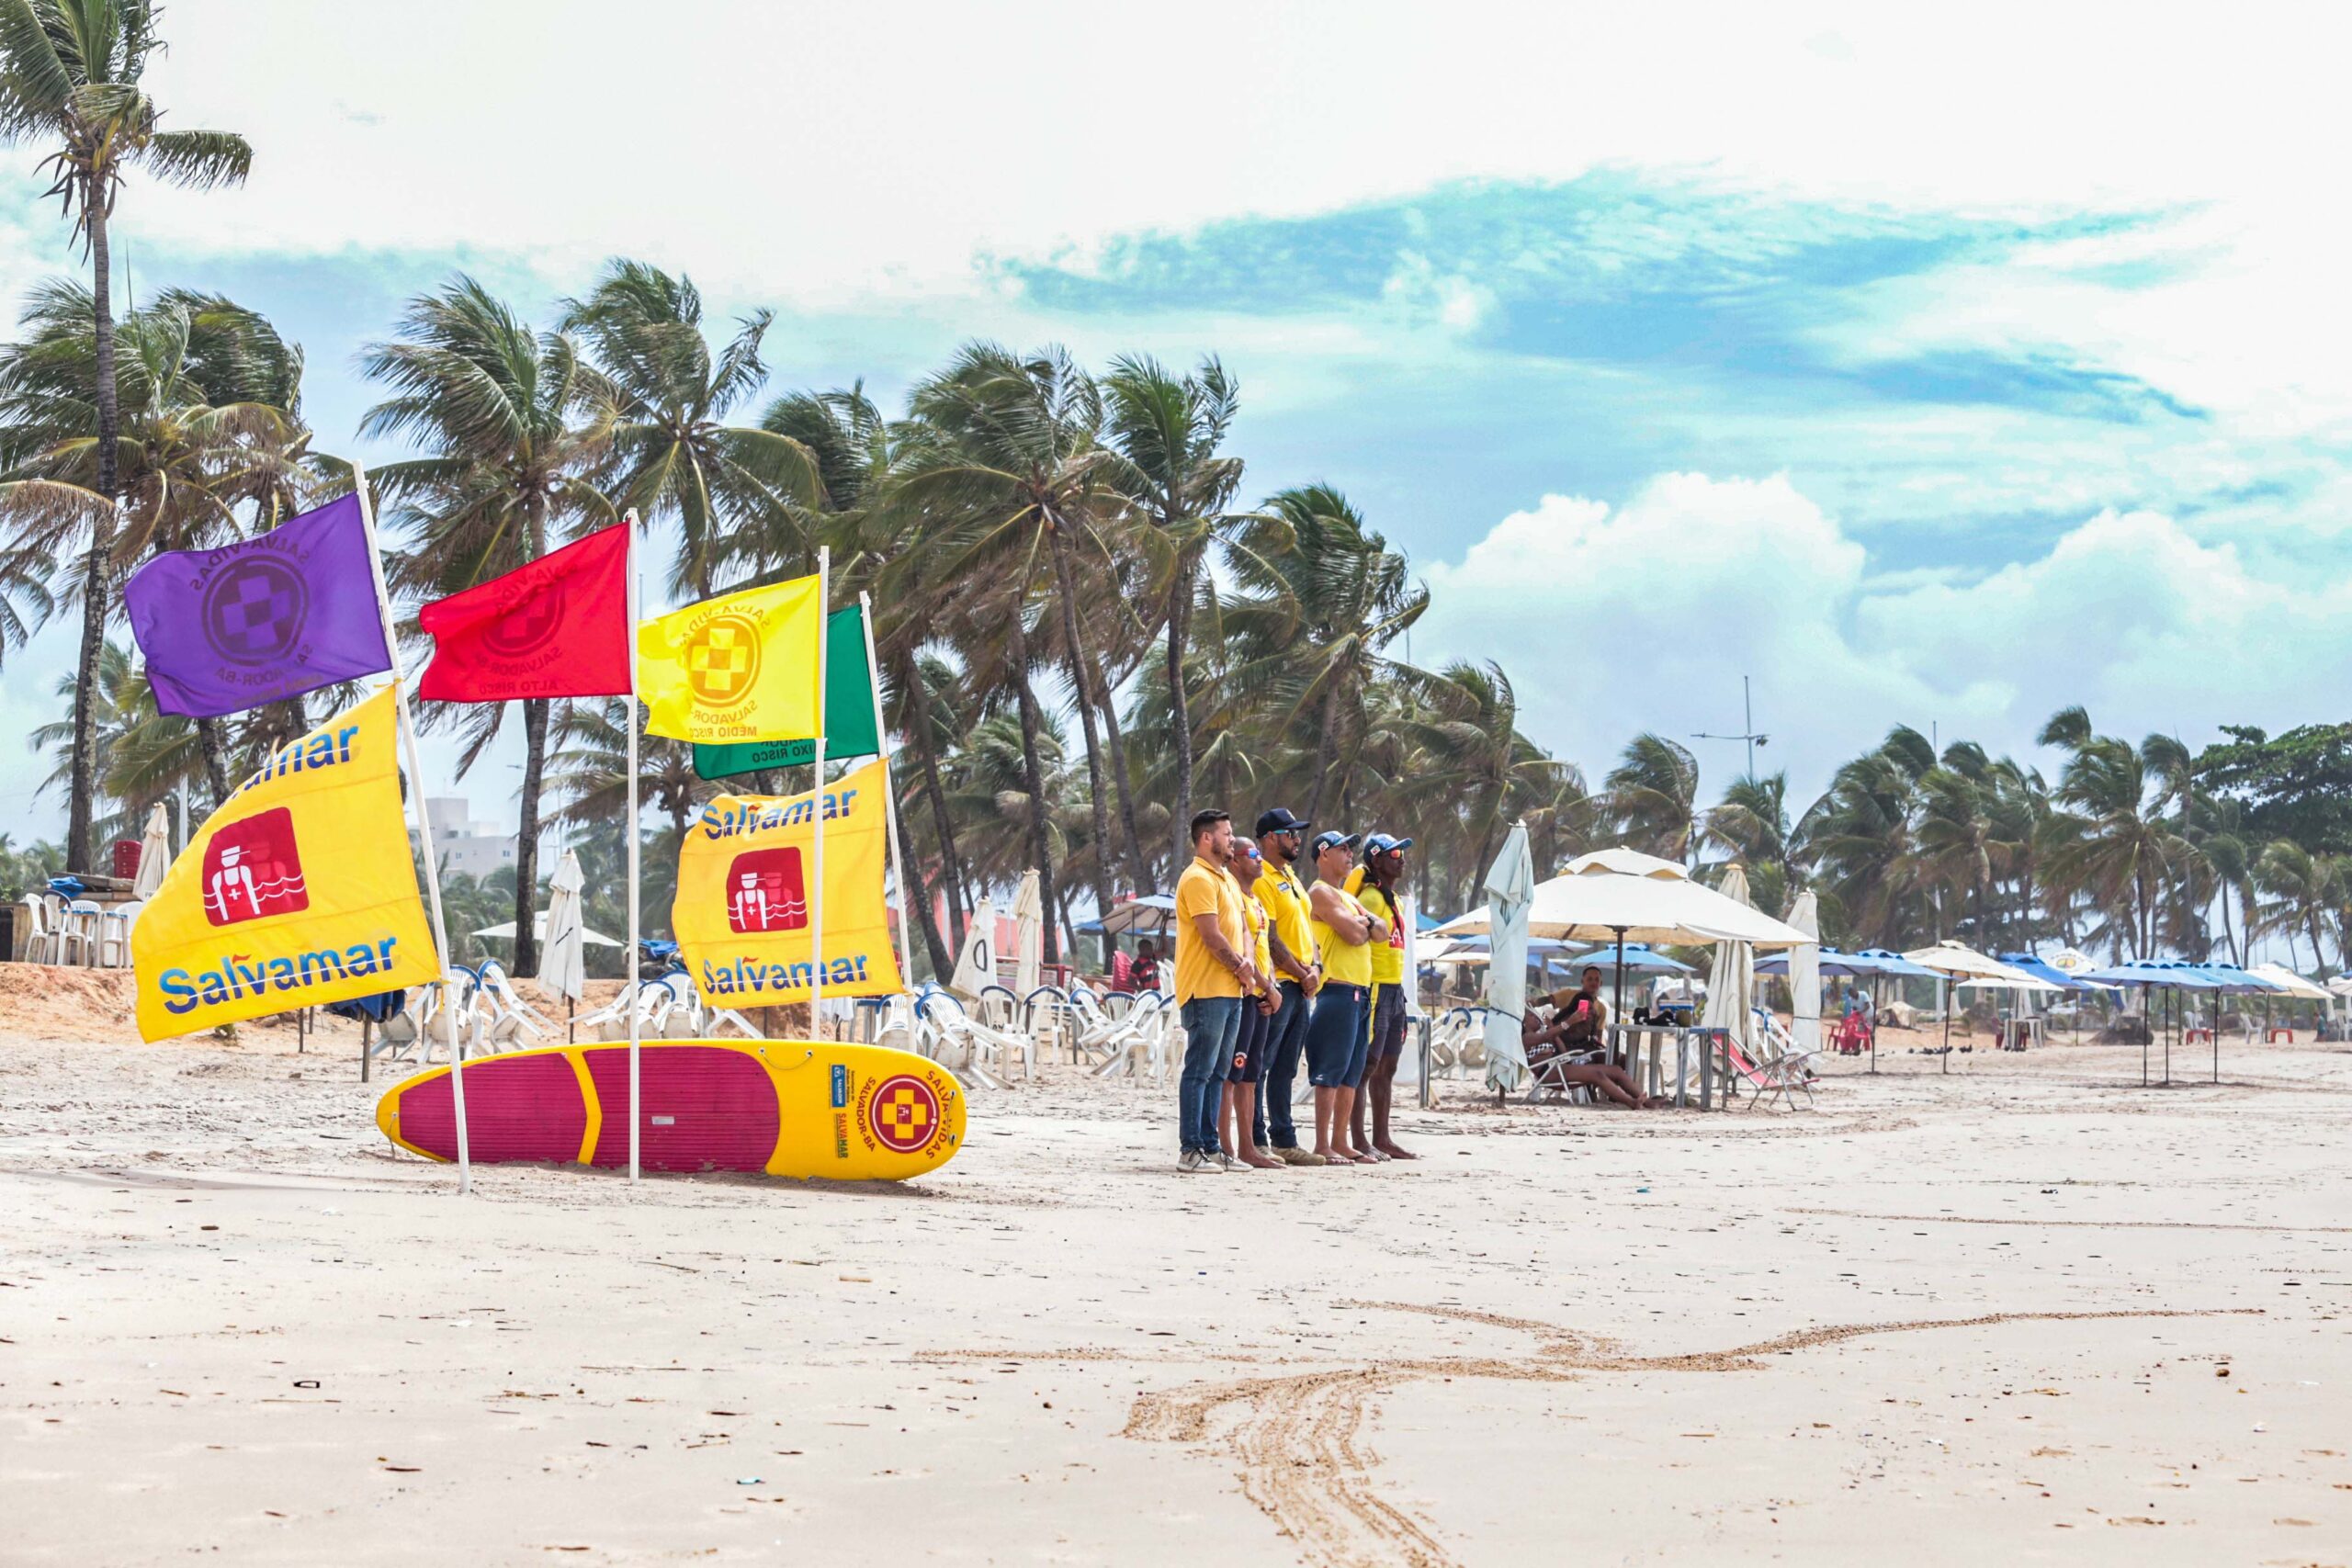 Salvamar eleva segurança nas praias com novas bandeiras de identificação